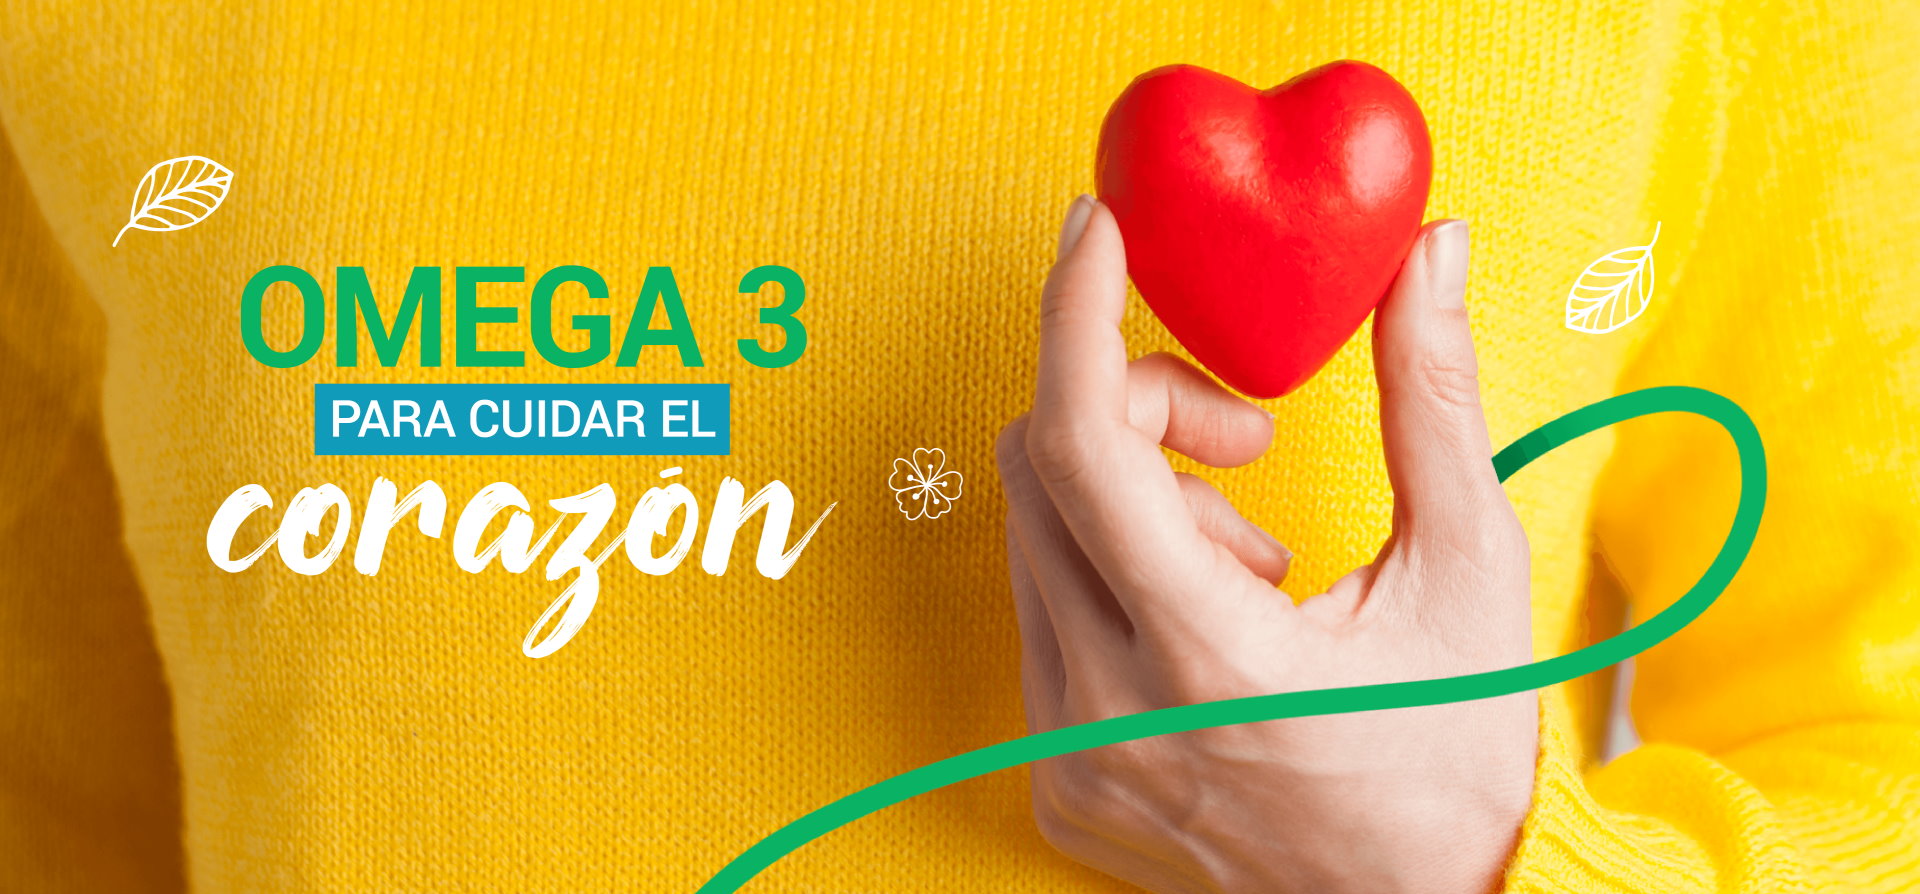 Omega 3 para cuidar el corazón